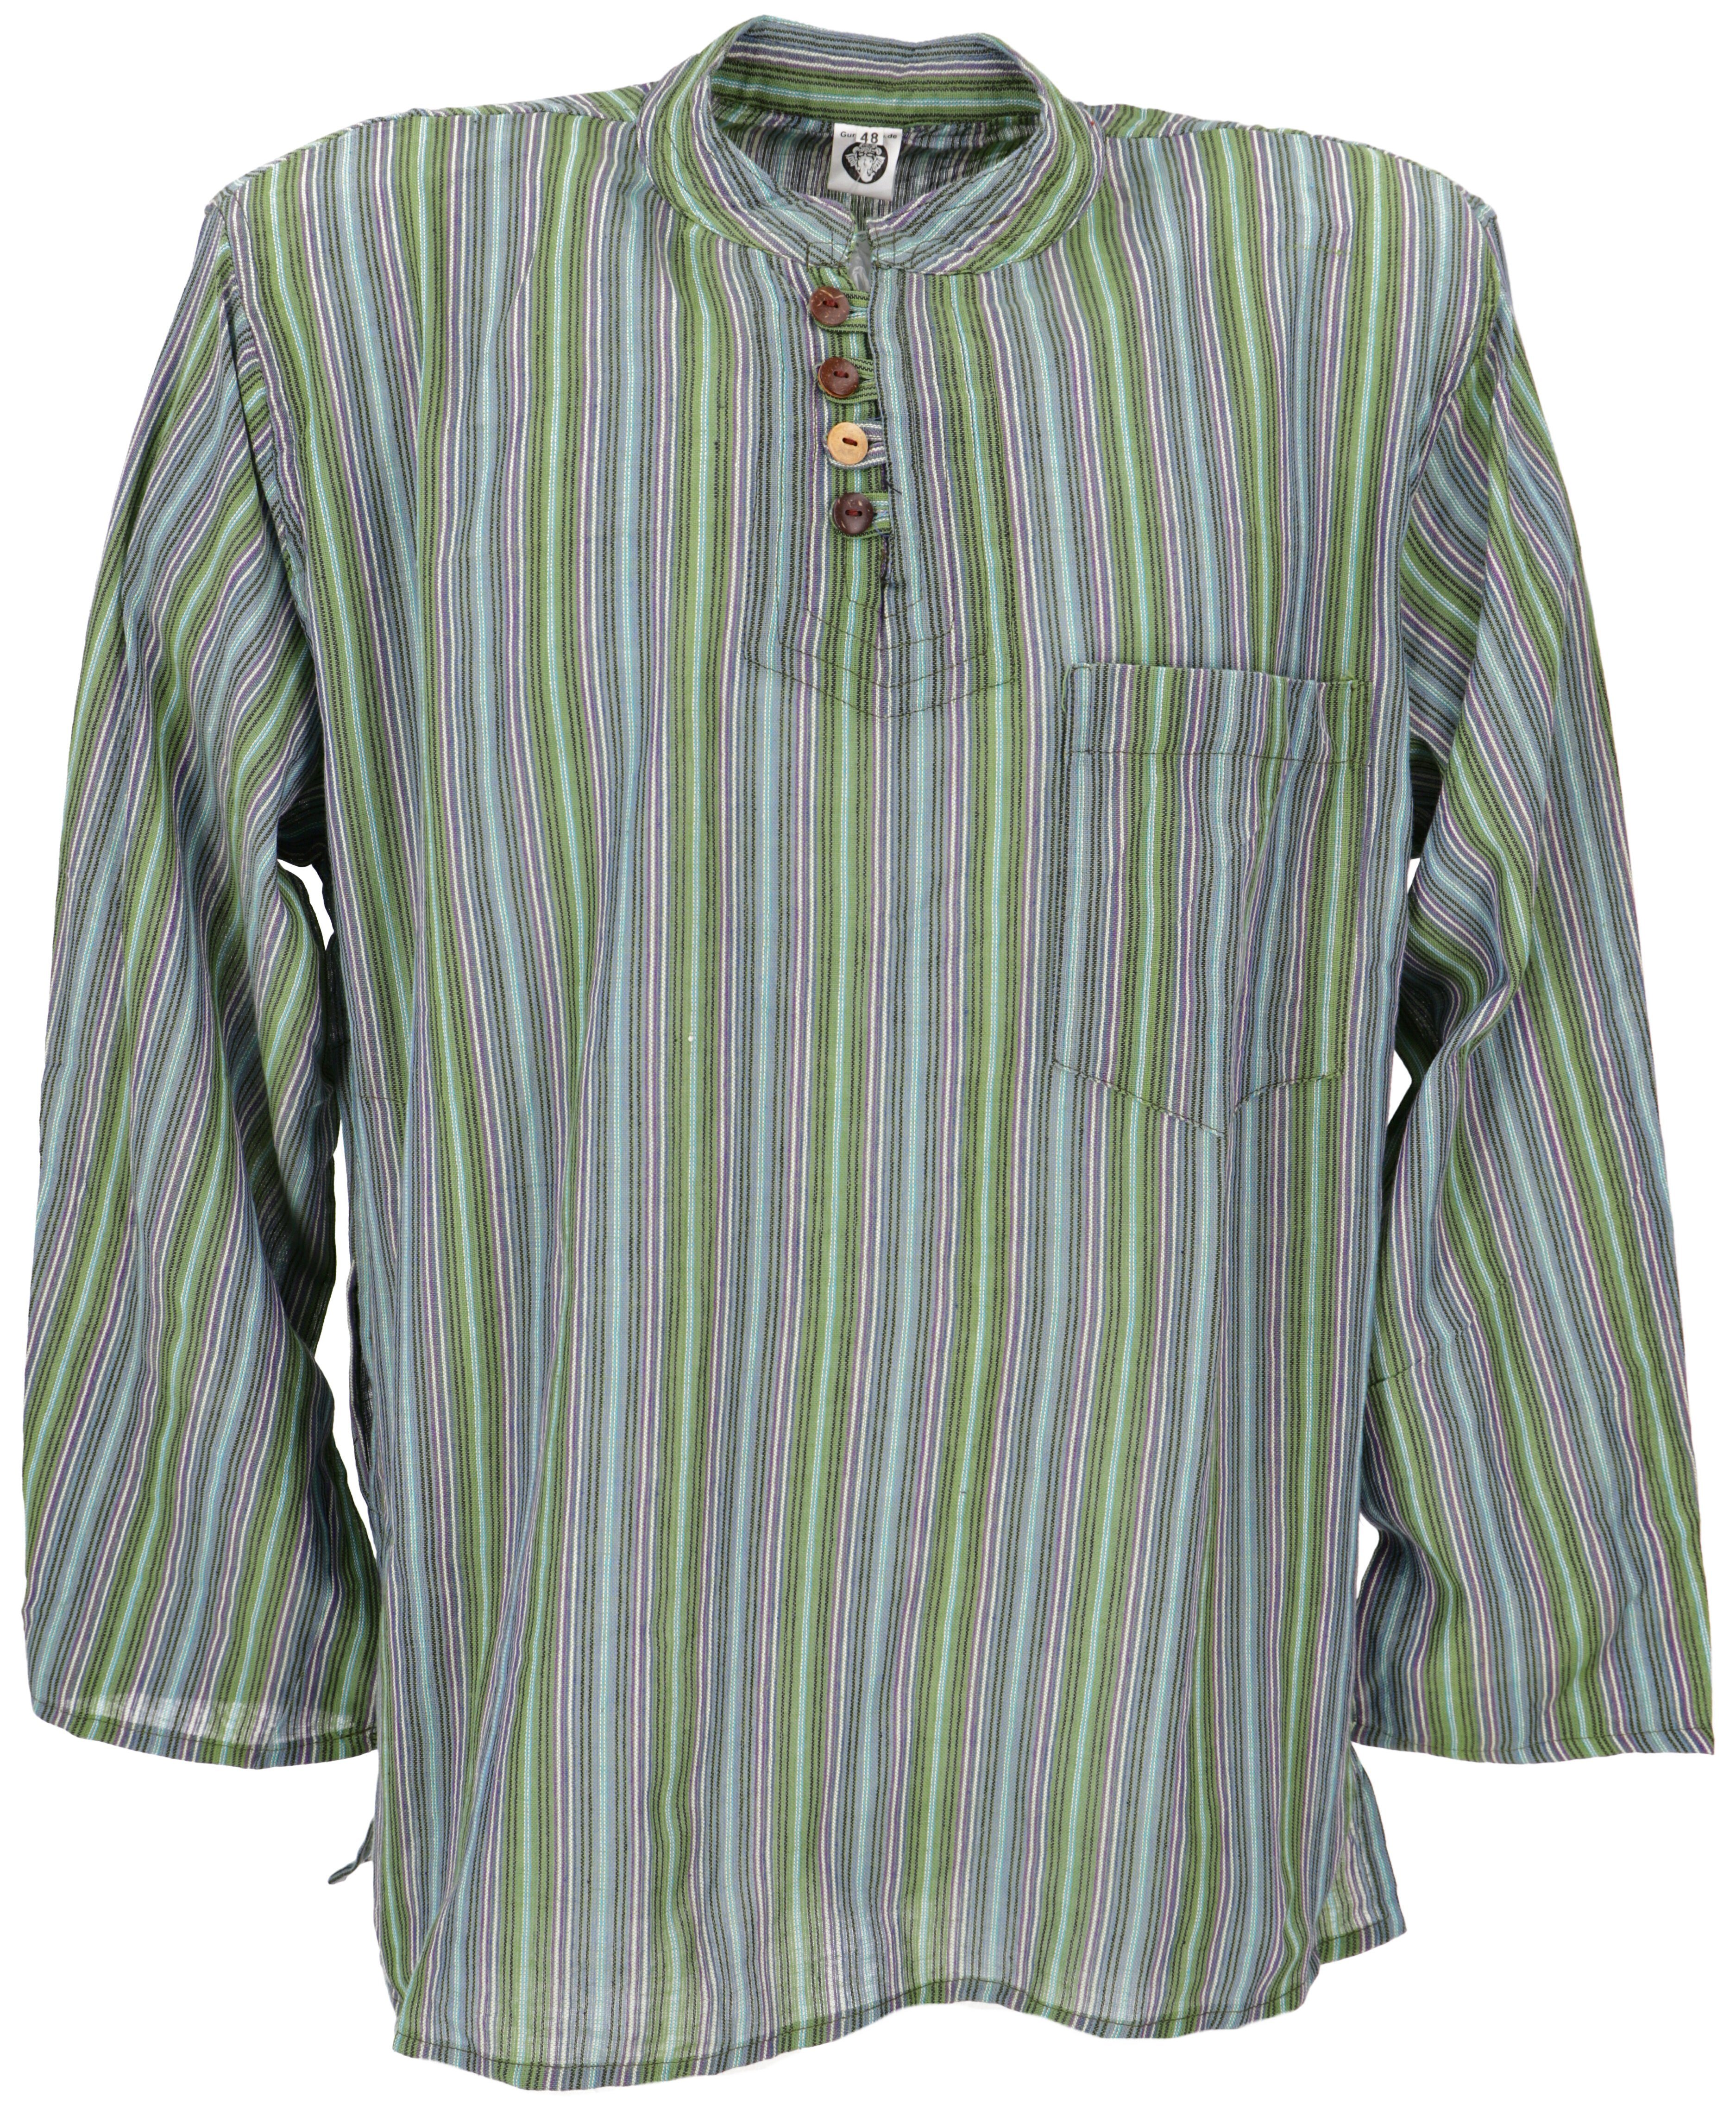 Guru-Shop Hemd & Shirt Nepal Fischerhemd, gestreiftes Goa Hippie Hemd,.. Retro, Ethno Style, alternative Bekleidung